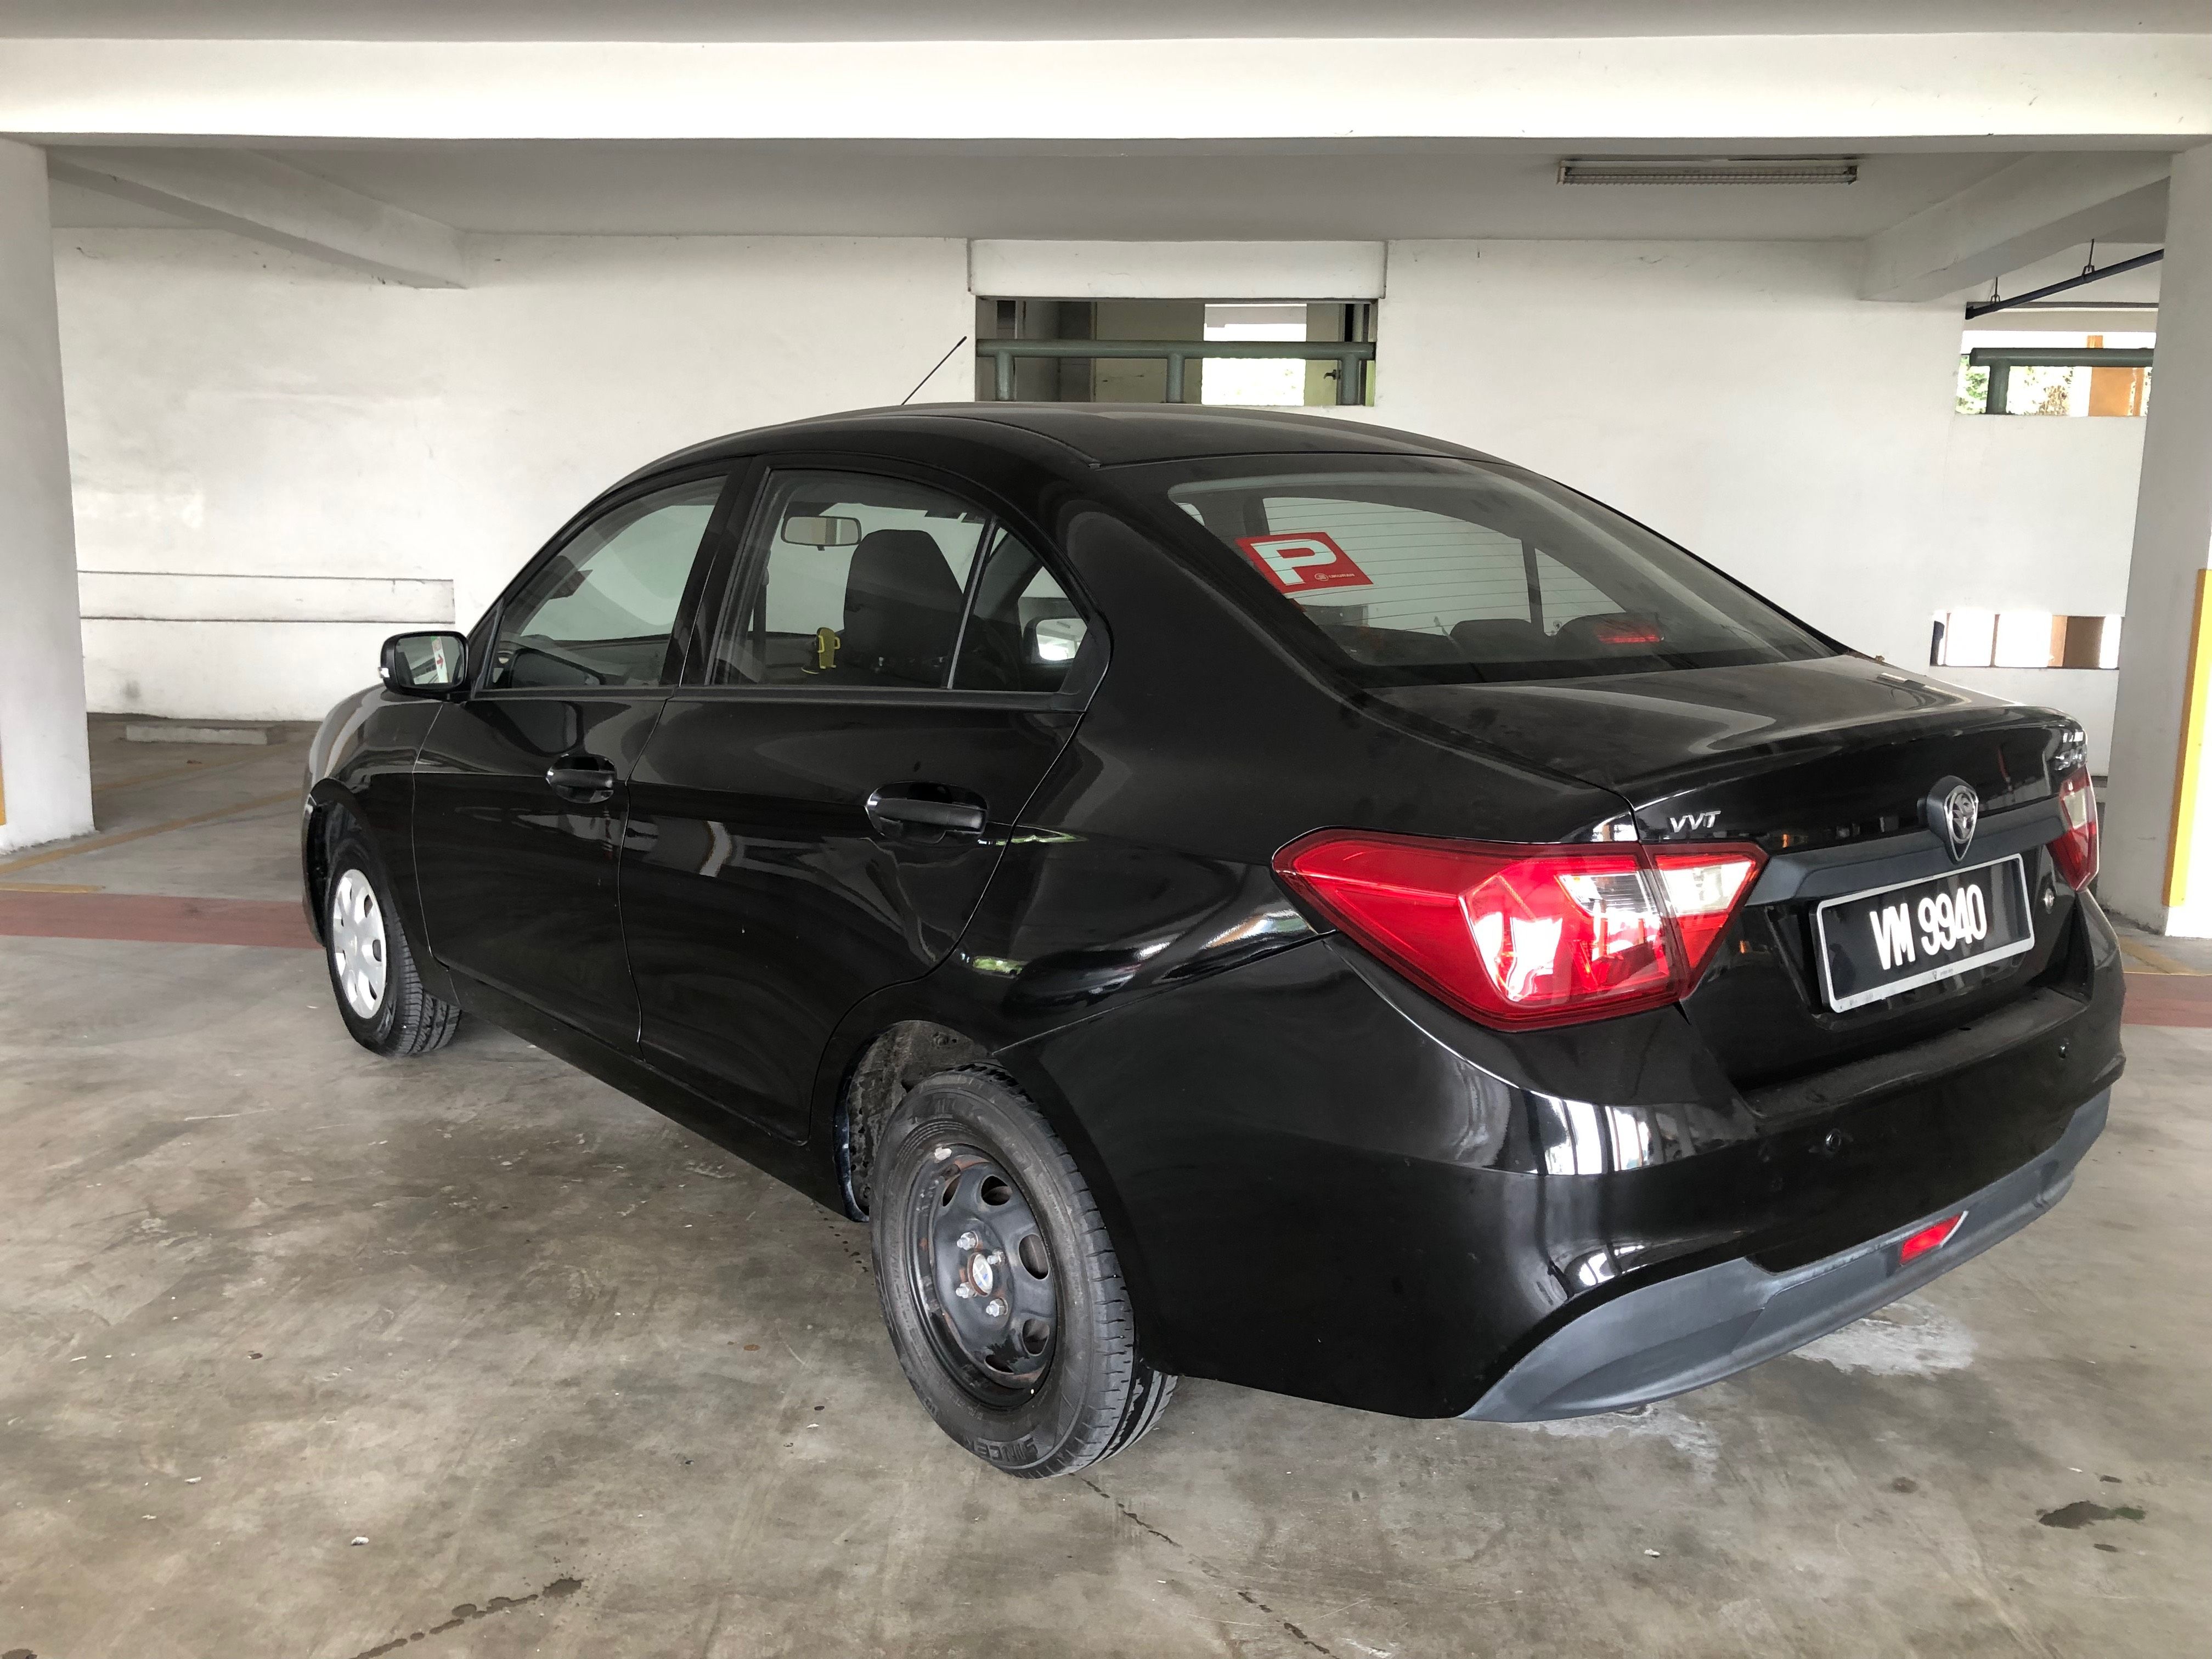 Terpakai 2017 Proton Saga Standard CVT untuk Dijual